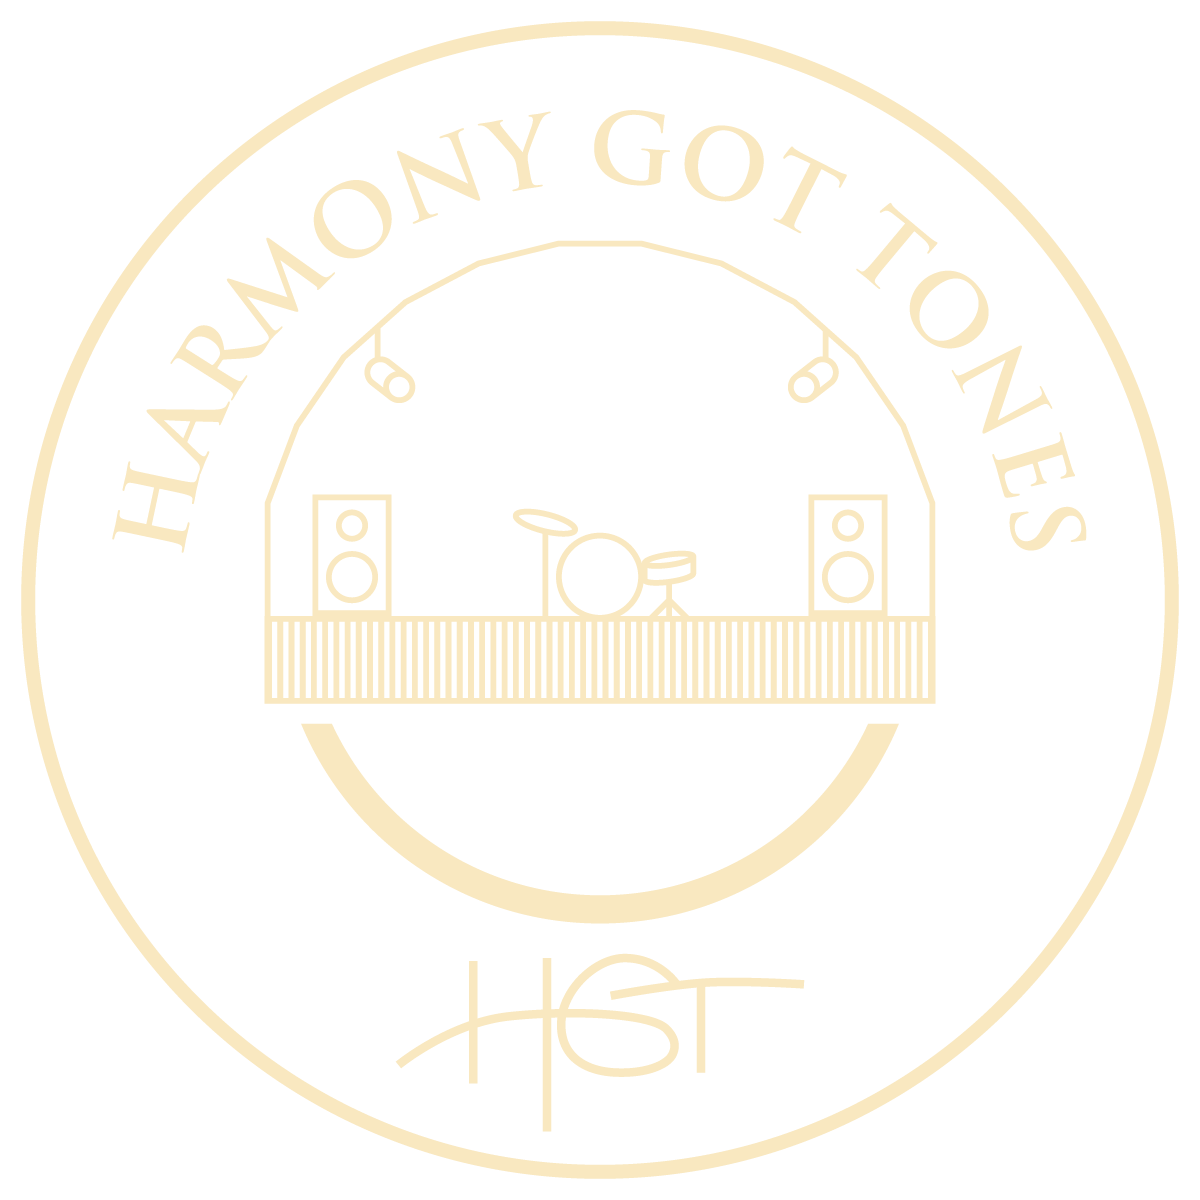 Harmony Got Tones